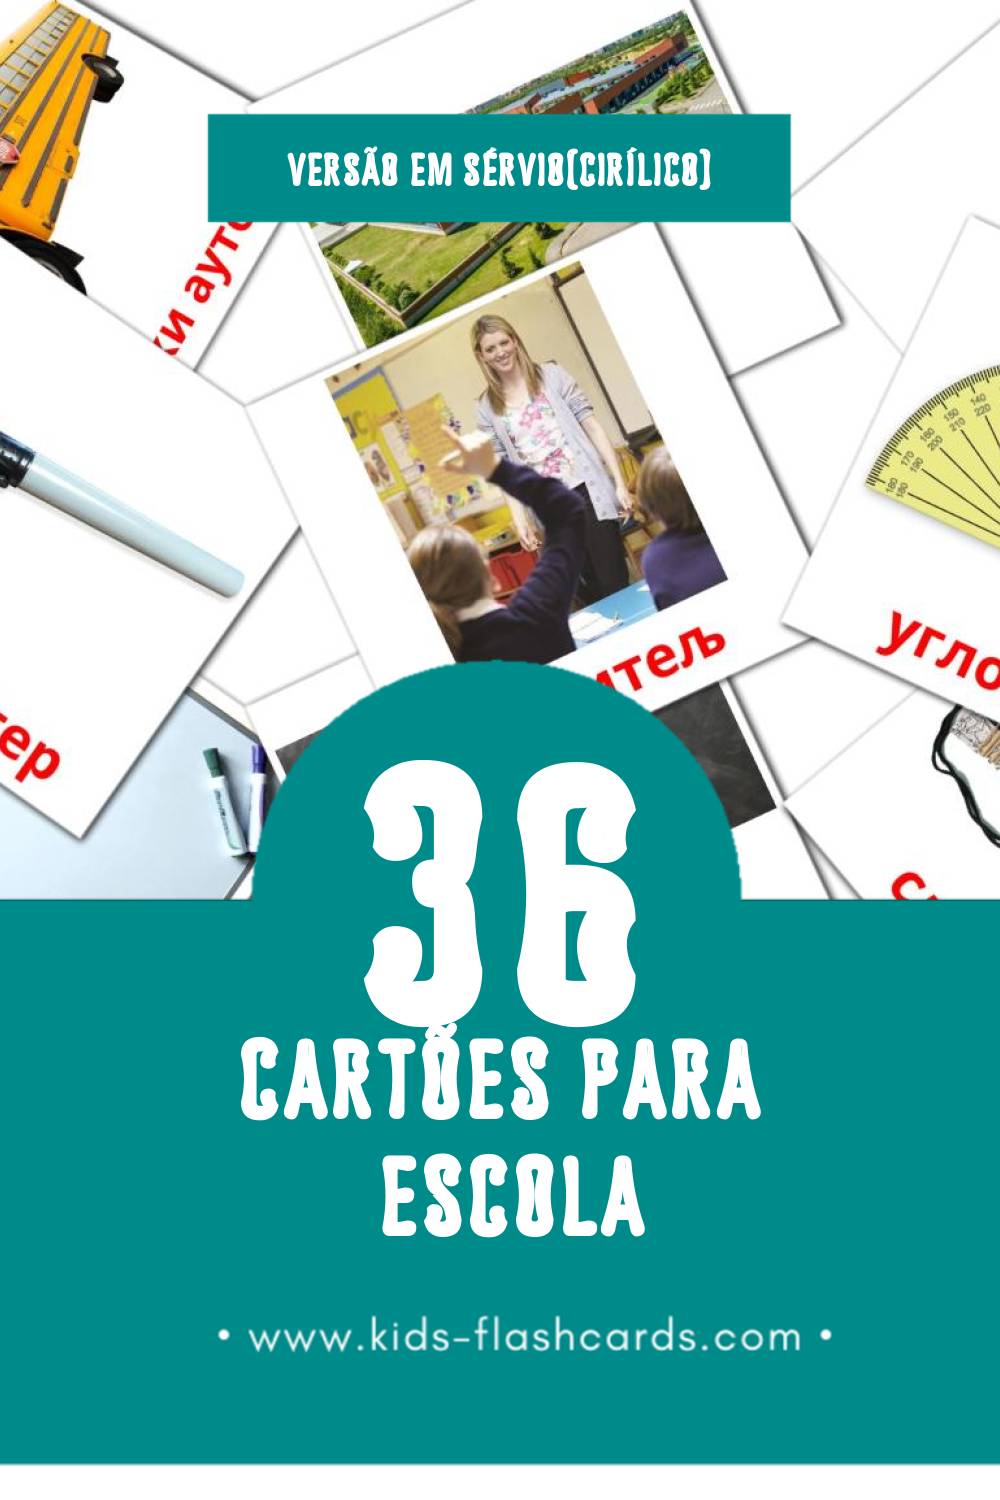 Flashcards de  школа Visuais para Toddlers (36 cartões em Sérvio(cirílico))